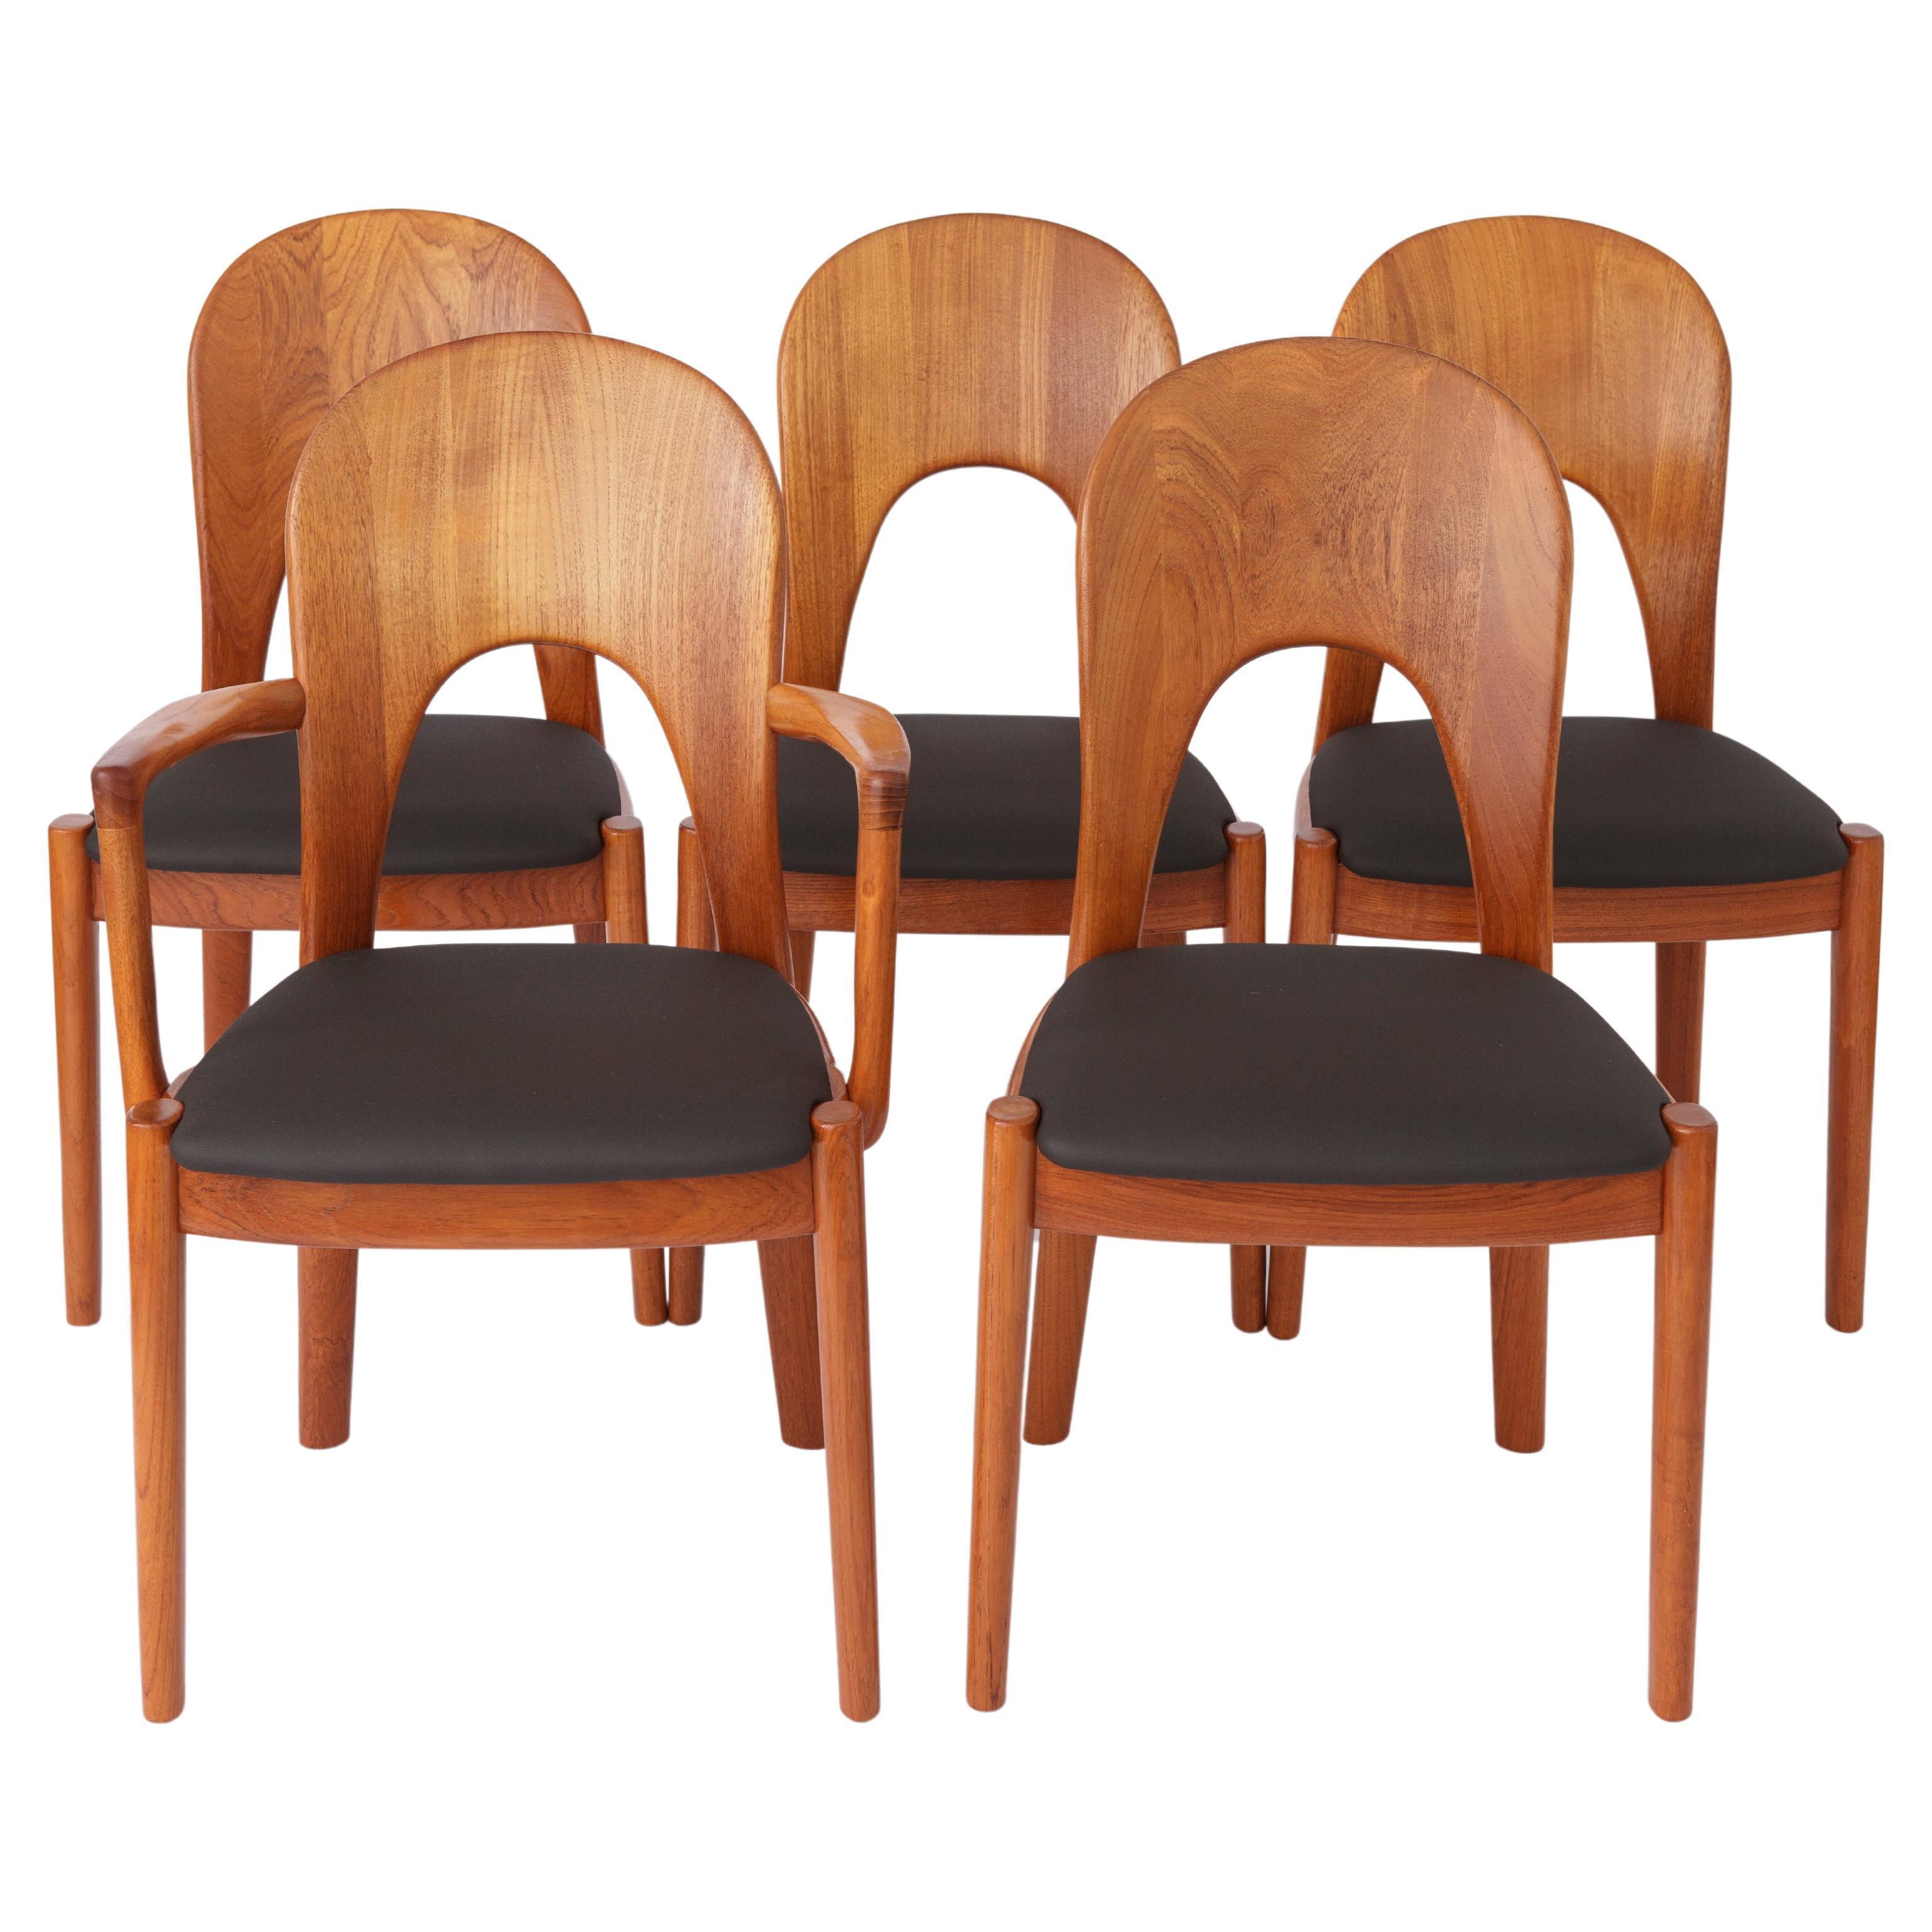 5 Vintage Chairs by Niels Koefoed 1960s Danish Teak